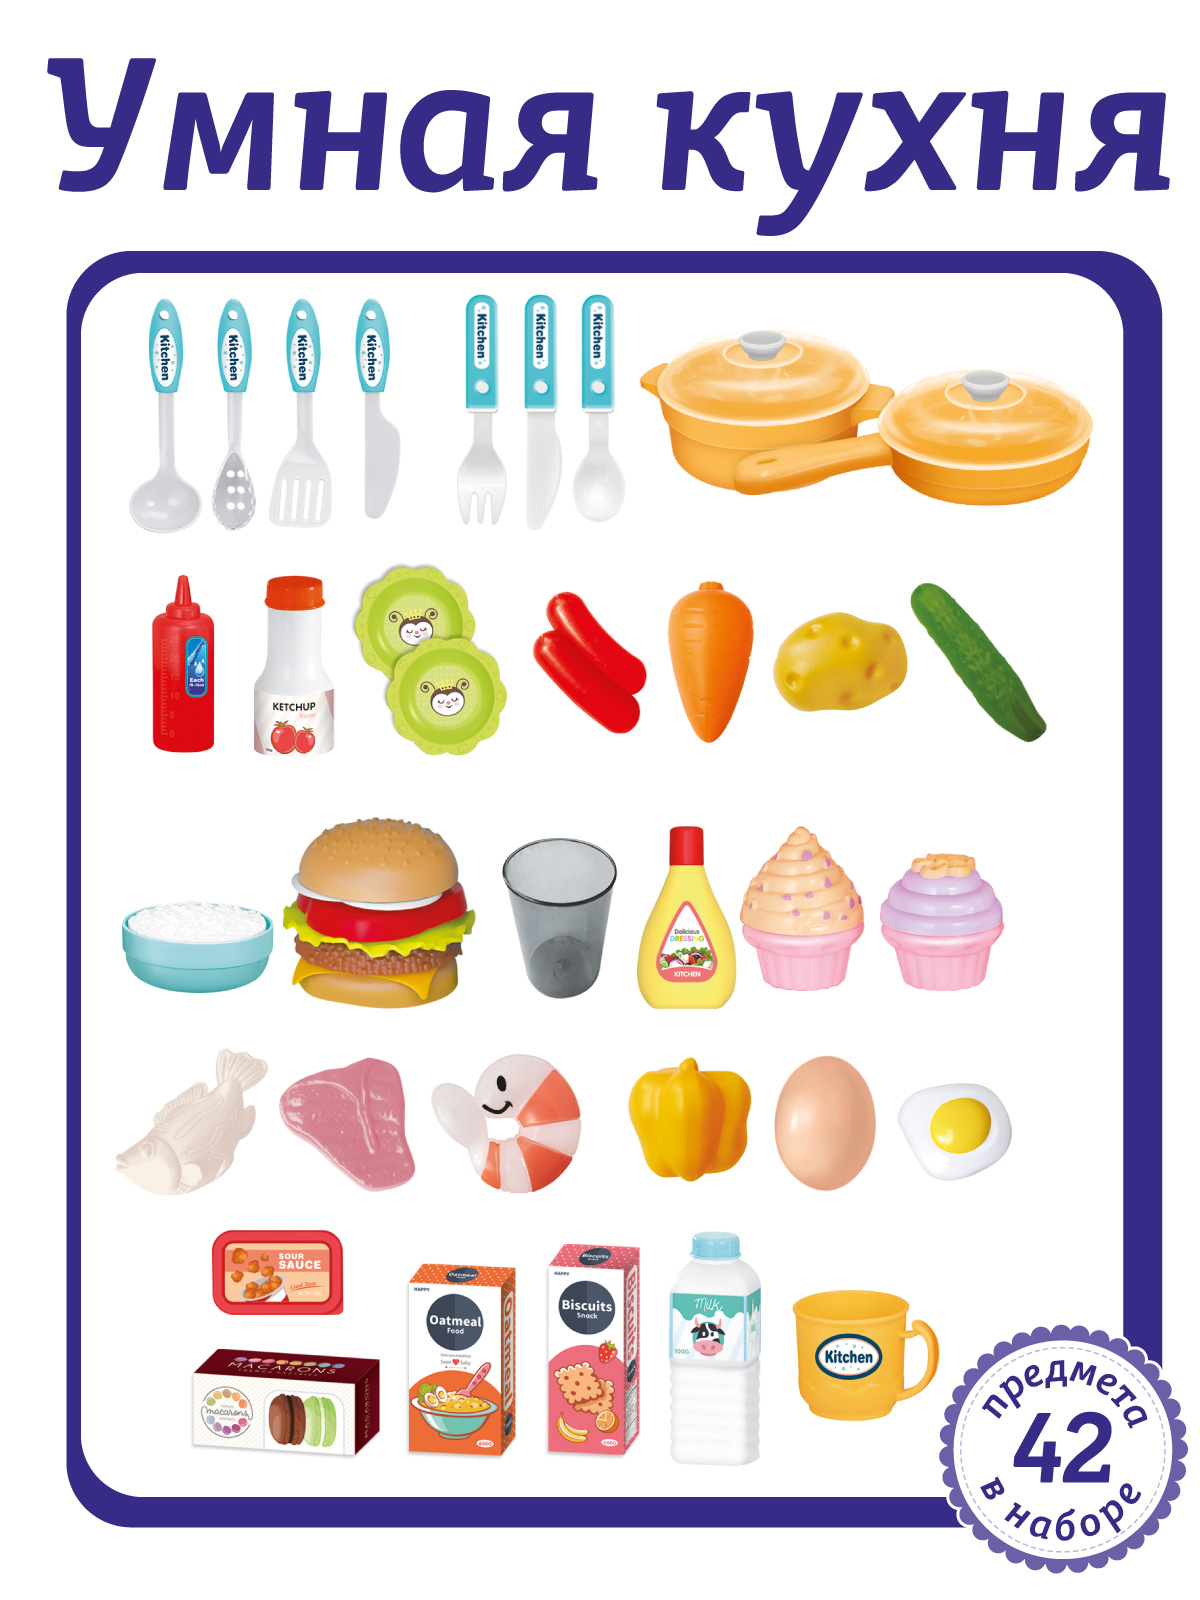 Игровой набор детский AMORE BELLO Умная Кухня с пультом с паром и кран с водой игрушечные продукты и посуда 42 JB0209162 - фото 6